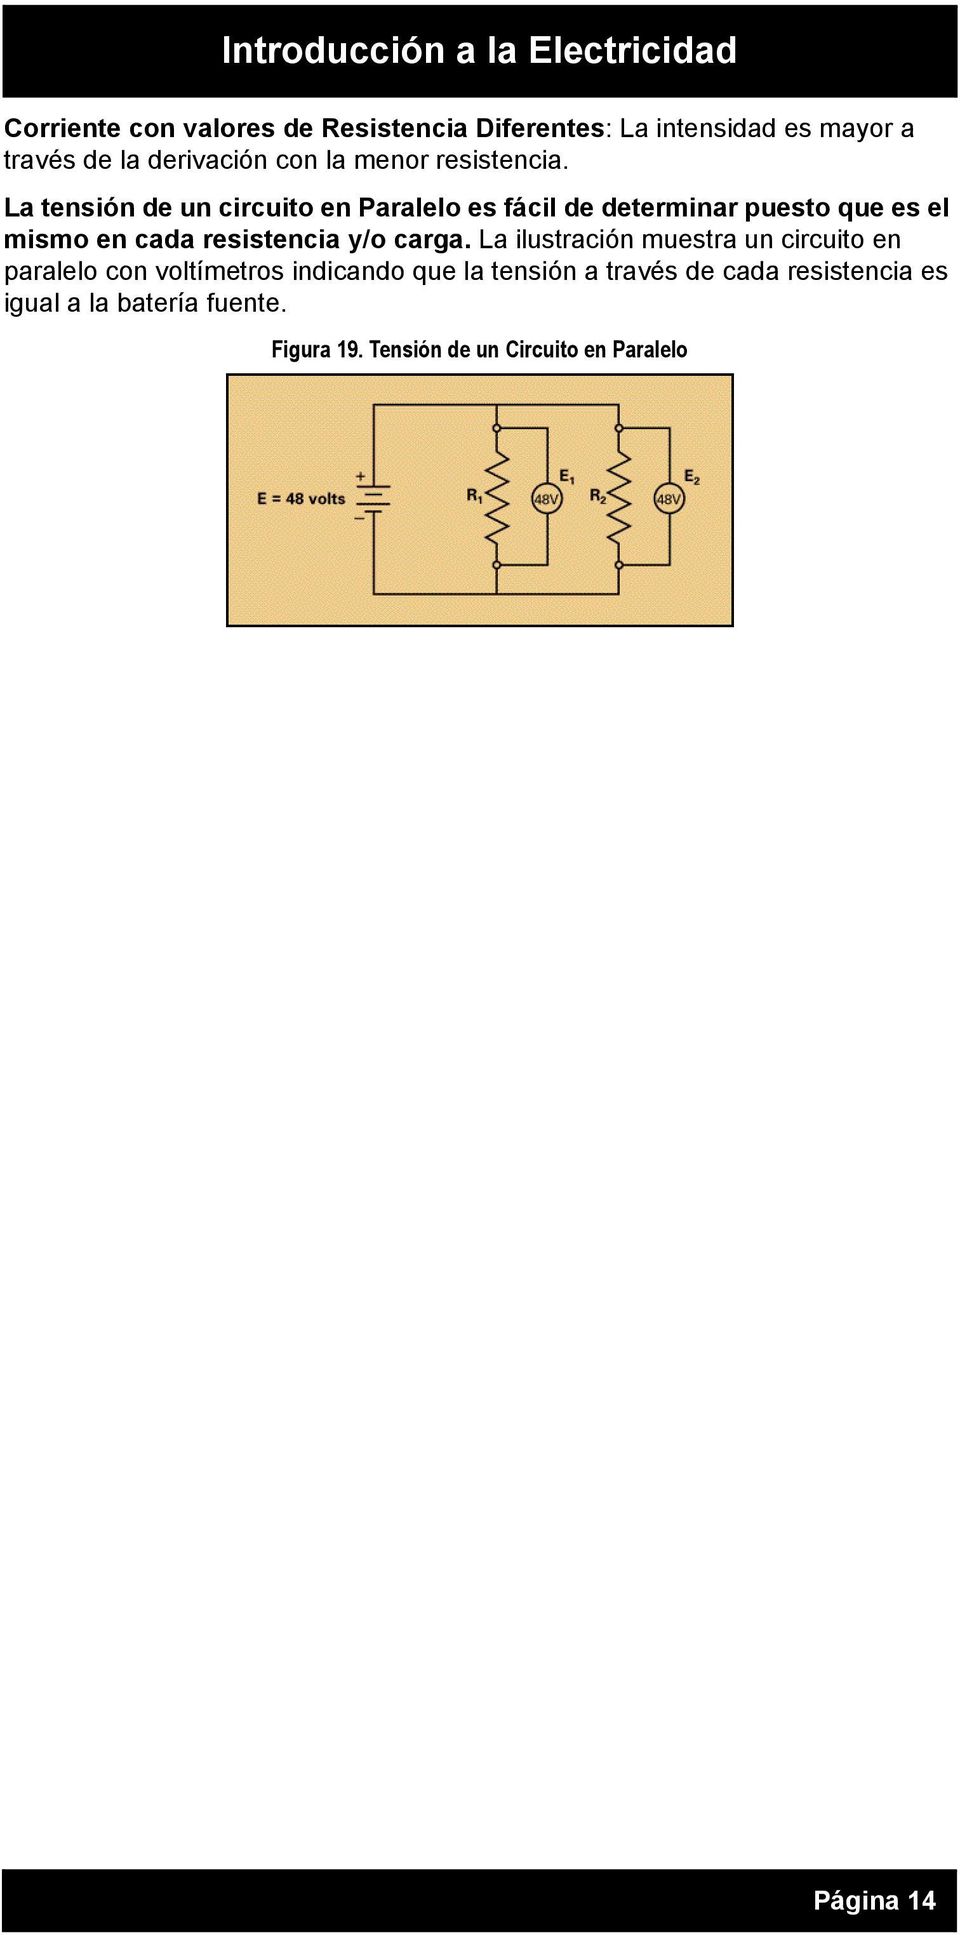 La tensión de un circuito en Paralelo es fácil de determinar puesto que es el mismo en cada resistencia y/o